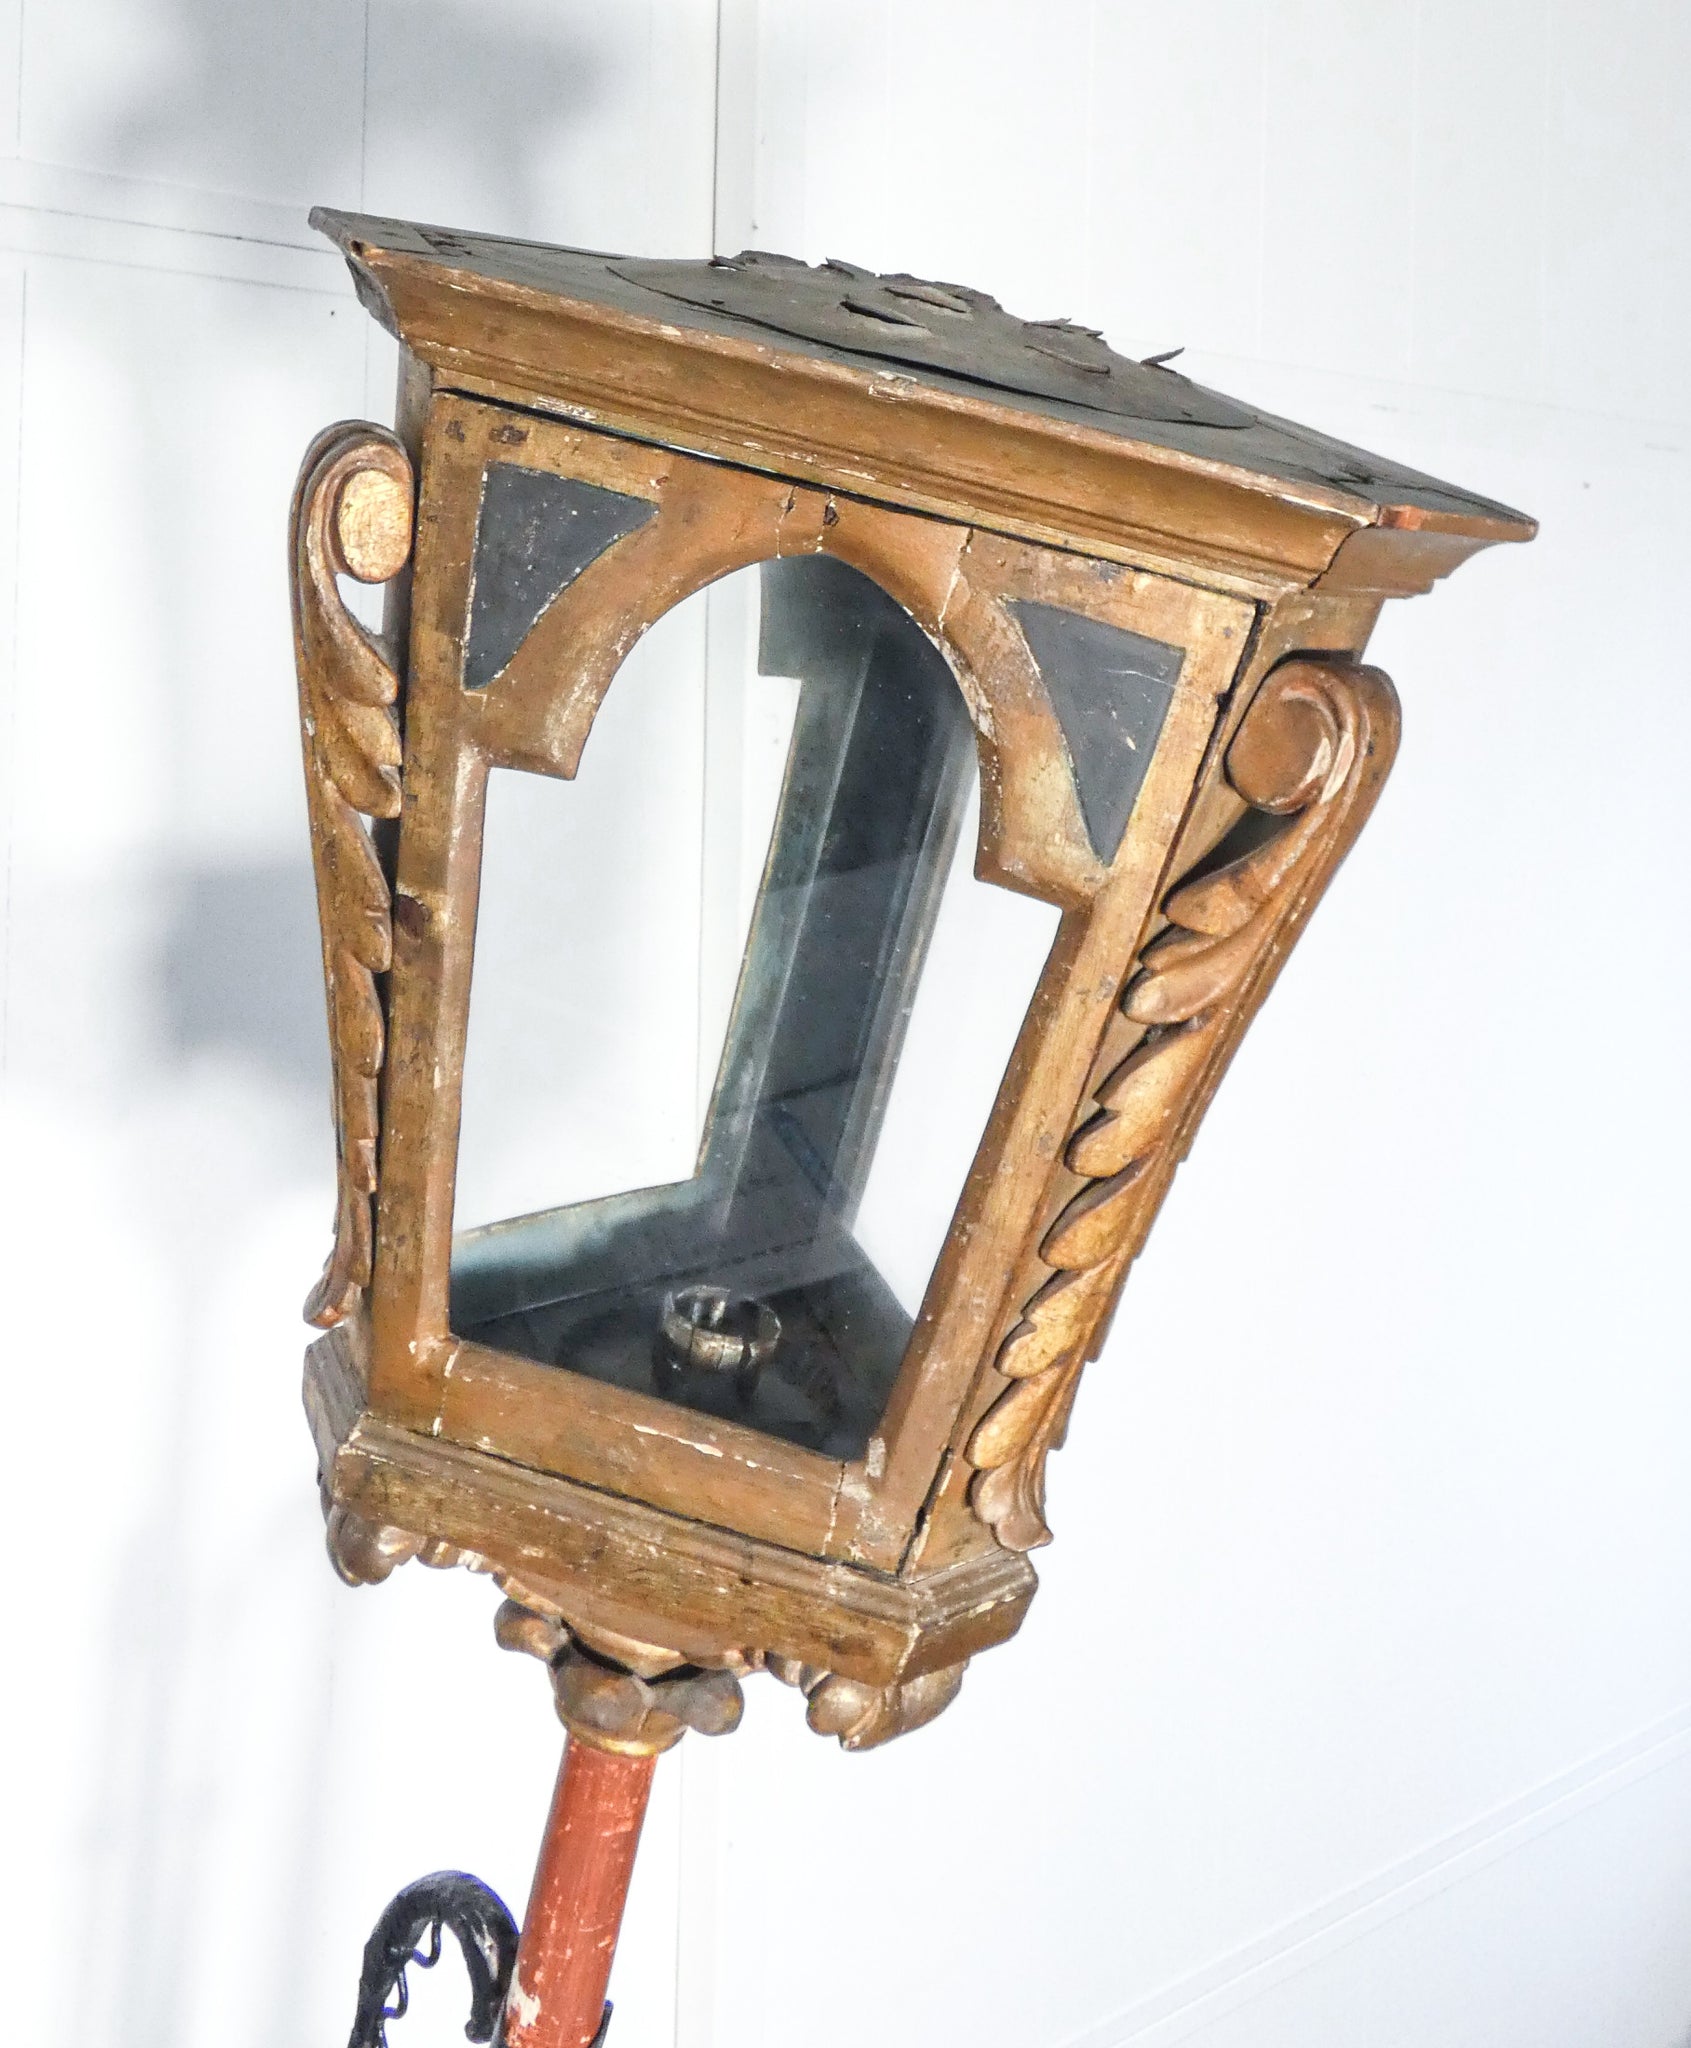 lampione epoca 1800 legno dorato scolpito ferro battuto lanterna candela antico